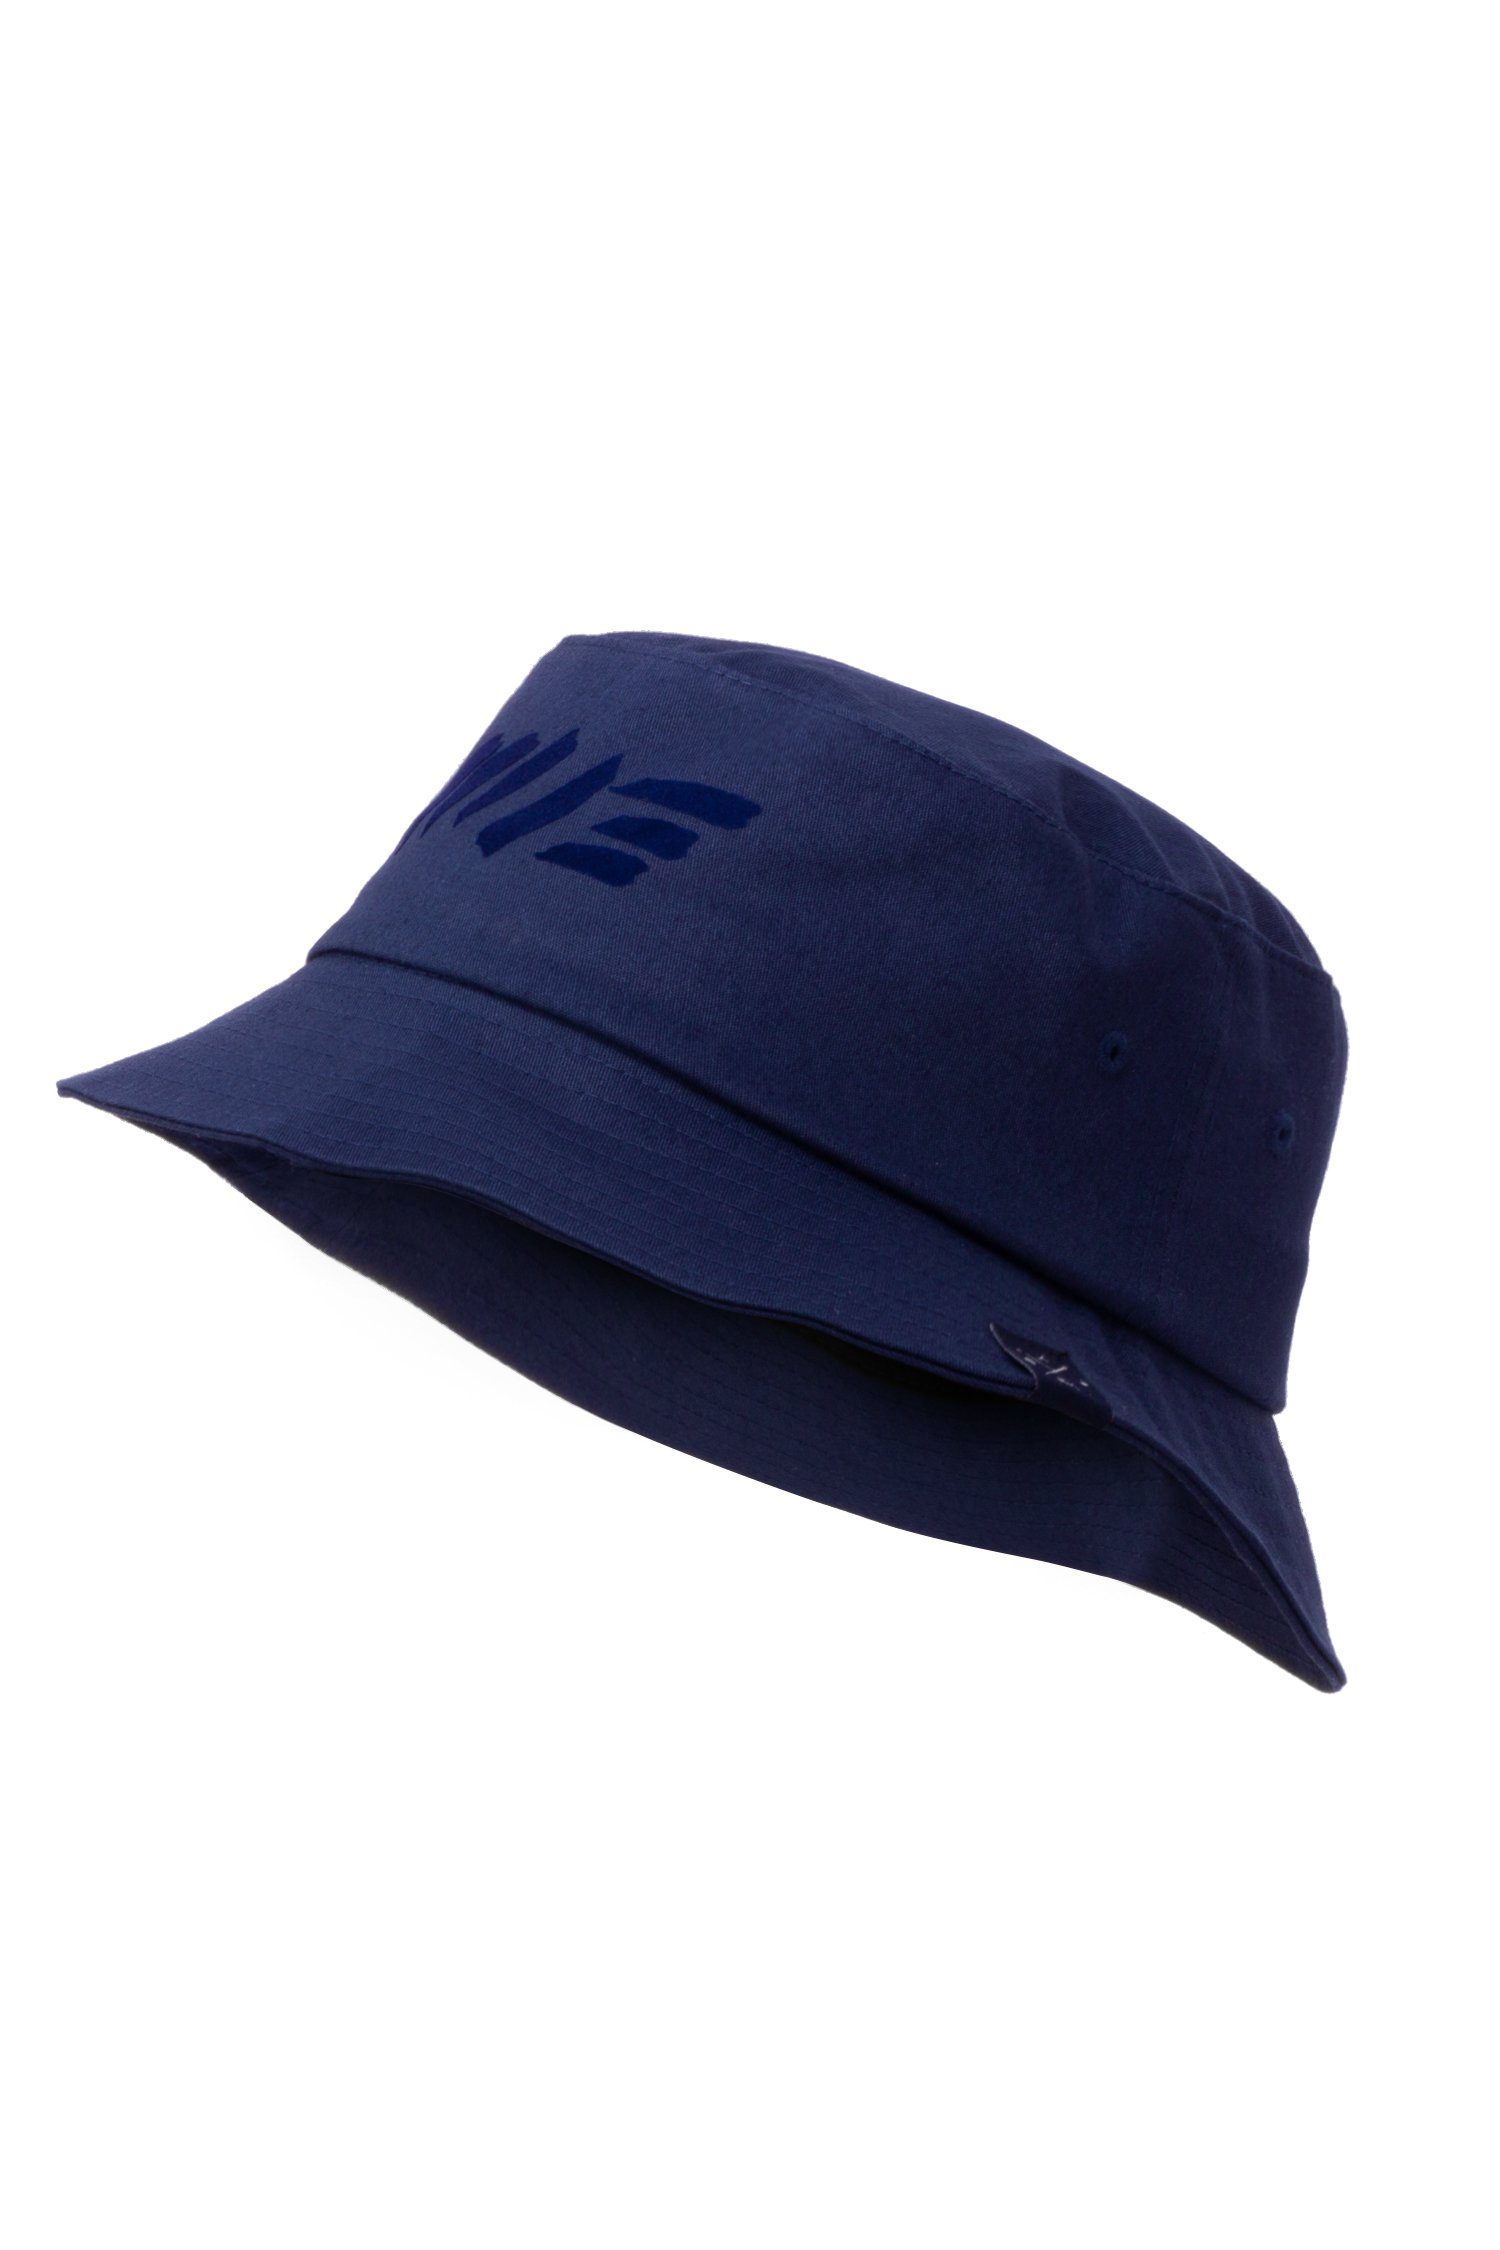 Anglerhut, M13 Hat Fischerhut Hat, Manufaktur13 Bucket Navy 100% - Fischermütze Vegan Session